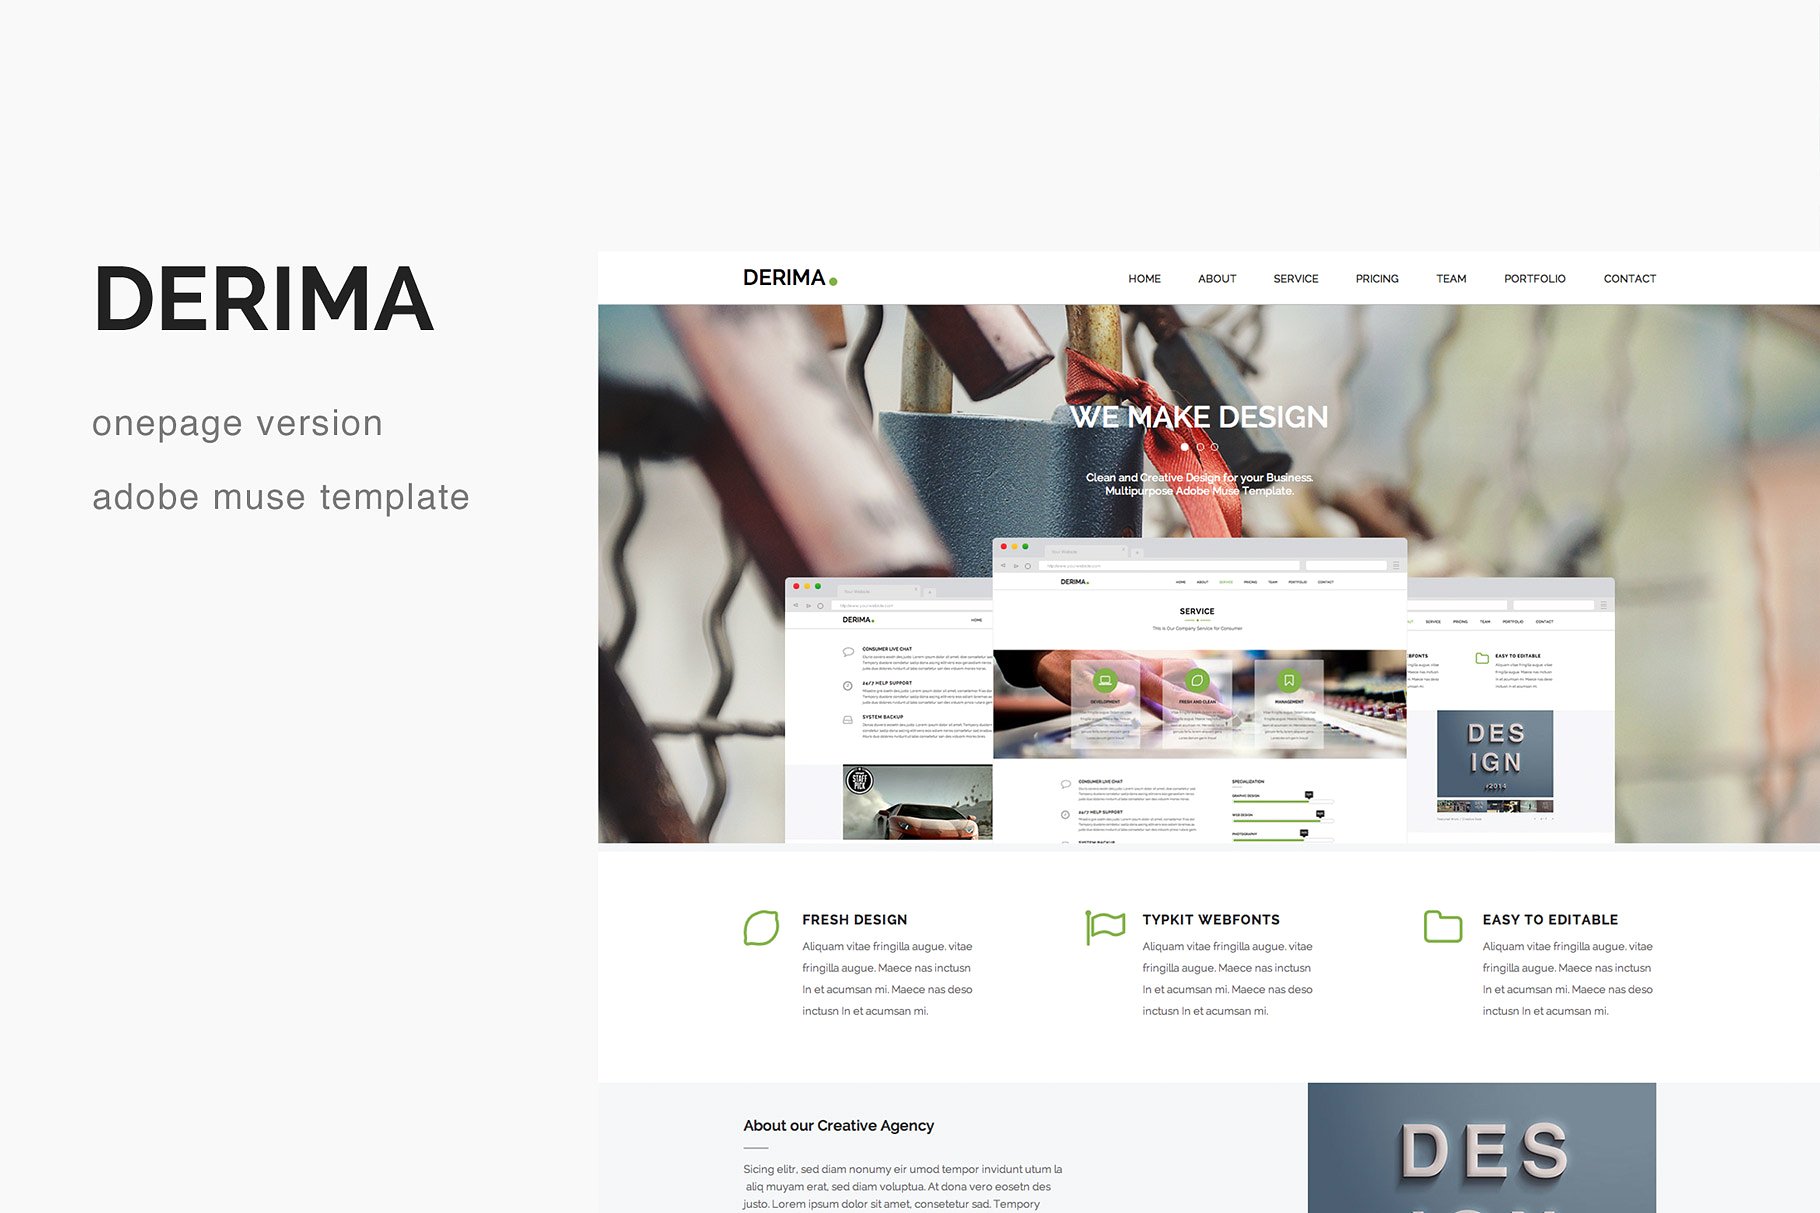 多用途视差创意单页网站设计Muse模板素材库精选 Derima – One Page Muse Template插图